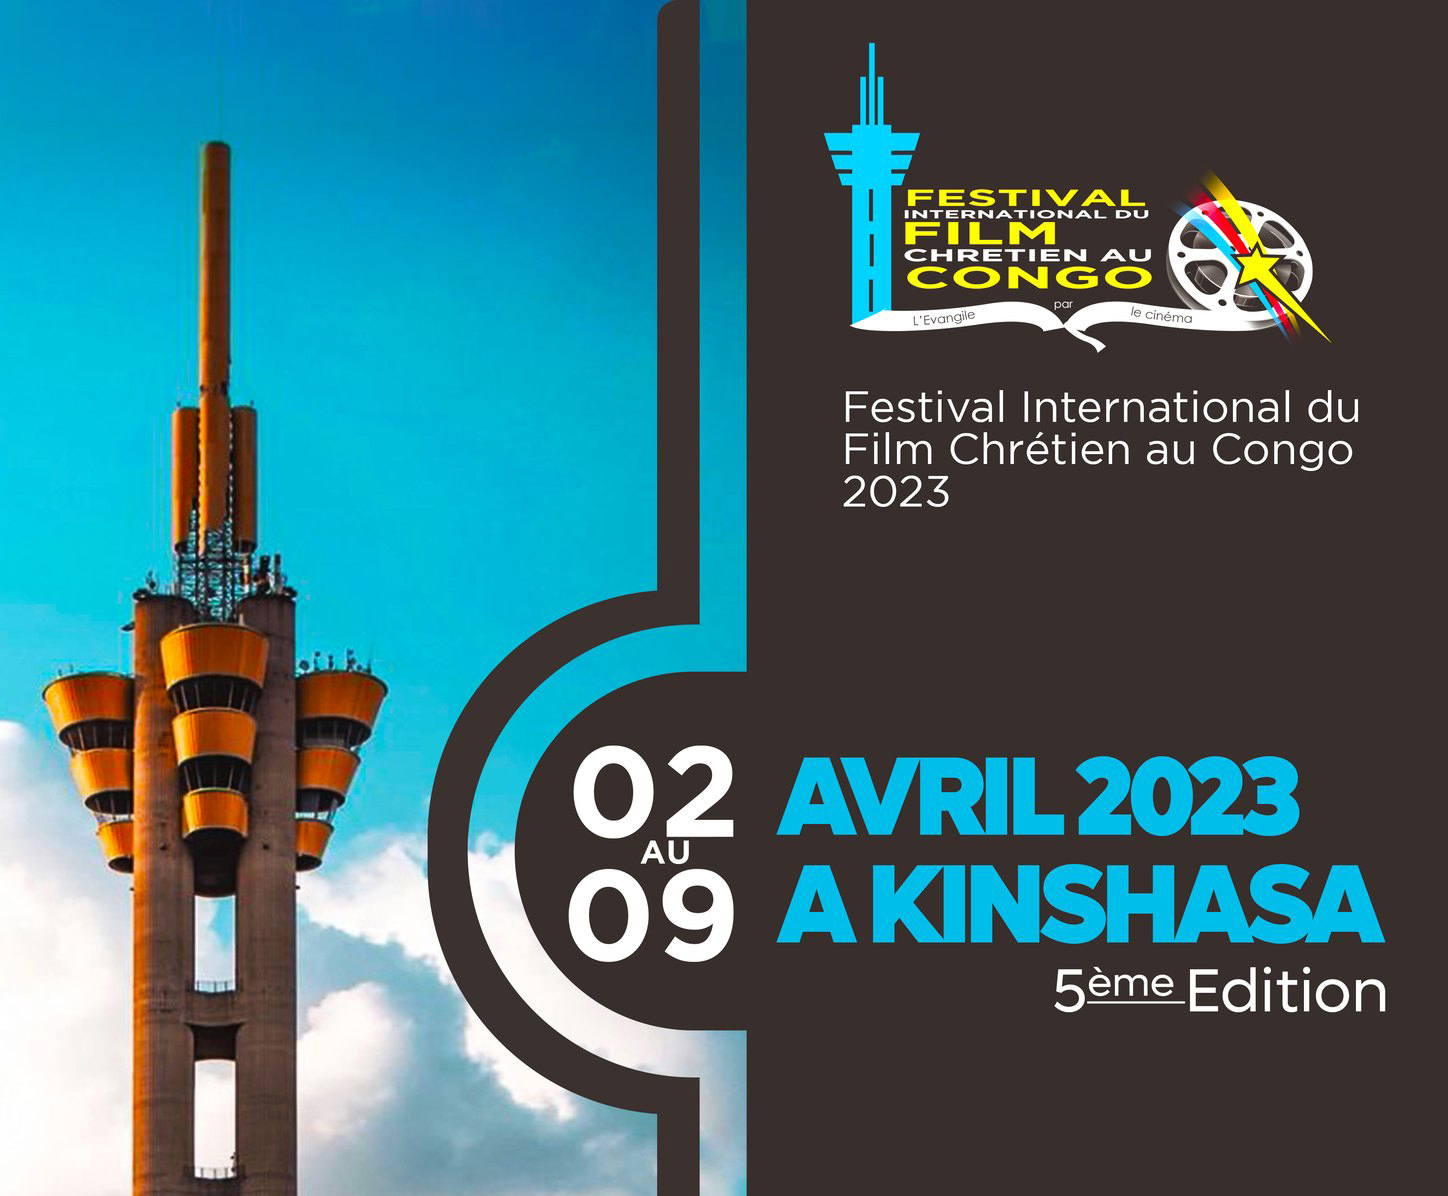 <!-- wp:heading -->
<h2>C'est en début de soirée que <a href="https://cinecongo.org/fecoci-un-elan-pour-la-relance-du-cinema-au-congo/">Richard Thumitho</a>, coordonnateur du Festival International du Film Chrétien du Congo, annonce la liste des films sélectionnés pour le compte de la 5e édition du Festival FIFCC qui se déroulera du 02 au 09 avril 2023 à Kinshasa.</h2>
<!-- /wp:heading -->

<!-- wp:paragraph -->
<p>Lors de l'annonce, <a href="https://cinecongo.org/selon-richard-thumitho-produire-4-films-par-an-est-possible/">Richard Thumitho</a>, réalisateur et producteur des films, mais aussi Président National de la <a href="https://cinecongo.org/tag/fecoci/">Fédération Congolaise de Cinéma</a>, <a href="https://cinecongo.org/tag/fecoci/">Fecoci</a> en sigle, en a profité pour féliciter tous ceux dont le film est en sélection officielle à ce 5e FIFCC et à confirmer le rendez-vous qui interviendra durant les vacances de Pâques.</p>
<!-- /wp:paragraph -->

<!-- wp:paragraph -->
<p>Il est heureux de constater que dans la liste des films en compétition pour le 5e FIFCC, le film chrétien réalisé par <a href="https://cinecongo.org/tag/erick-kayembe/">Erick Kayembe</a>, "<a href="https://www.youtube.com/watch?v=SMQEvPtVokQ" target="_blank" rel="noreferrer noopener">NGUYA</a>" y est repris. Ceci est non seulement un honneur pour lui, nous dit-il, mais une occasion de rendre hommage au talent de feu "<a href="https://cinecongo.org/nos-films/">Naomi Kipulu</a>" actrice dans le film, mais qui nous a malheureusement quitté lors d'un accident déplorable.</p>
<!-- /wp:paragraph -->

<!-- wp:paragraph -->
<p>Dans le lot, hormis le film "<a href="https://www.youtube.com/watch?v=SMQEvPtVokQ" target="_blank" rel="noreferrer noopener">NGUYA</a>", nous pouvons lire les films : "<a href="https://www.youtube.com/watch?v=5shTg0G5B8I" target="_blank" rel="noreferrer noopener">MAGDALA</a>" de réalisateur <a href="https://cinecongo.org/tag/jean-jacques-nsele/">Jean-Jacques N'sele</a>, "Le voyageur" de Jacques Yonga du Cameroun et tant d'autres.</p>
<!-- /wp:paragraph -->

<!-- wp:paragraph -->
<p>Hâtes d'être du 02 au 09 avril 2023 pour vivre ce que sera l'ambiance chrétienne du Festival.</p>
<!-- /wp:paragraph -->

<!-- wp:paragraph -->
<p>Félicitations donc aux films sélectionnés.<a href="https://cinecongo.org/wp-content/uploads/2023/03/FIFCC.jpg" target="_blank" rel="noreferrer noopener"> Cliquez ici pour lire la sélection officielle du FIFCC</a></p>
<!-- /wp:paragraph -->